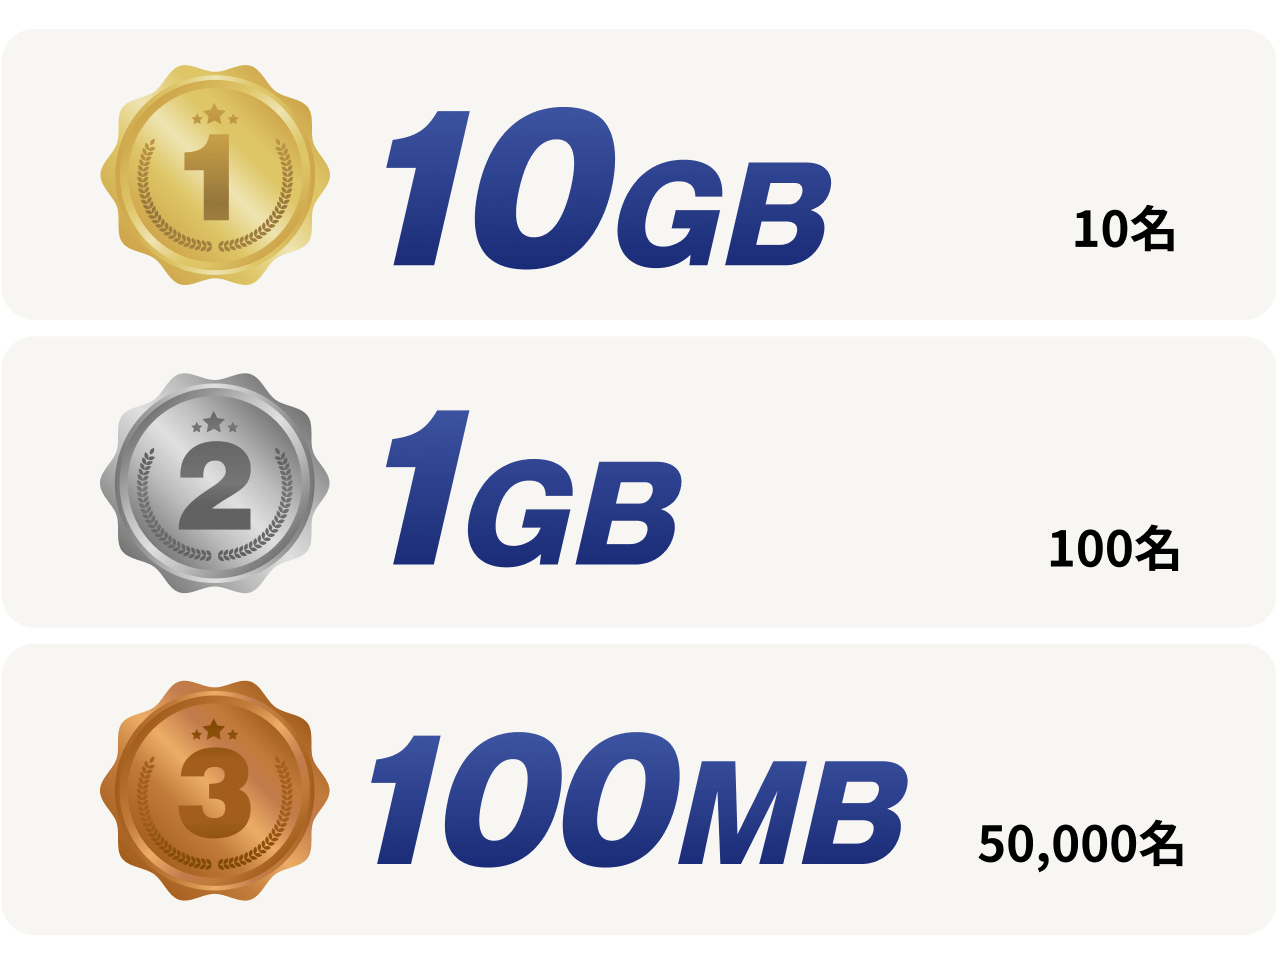 1等10GB、2等1GB、3等100MB